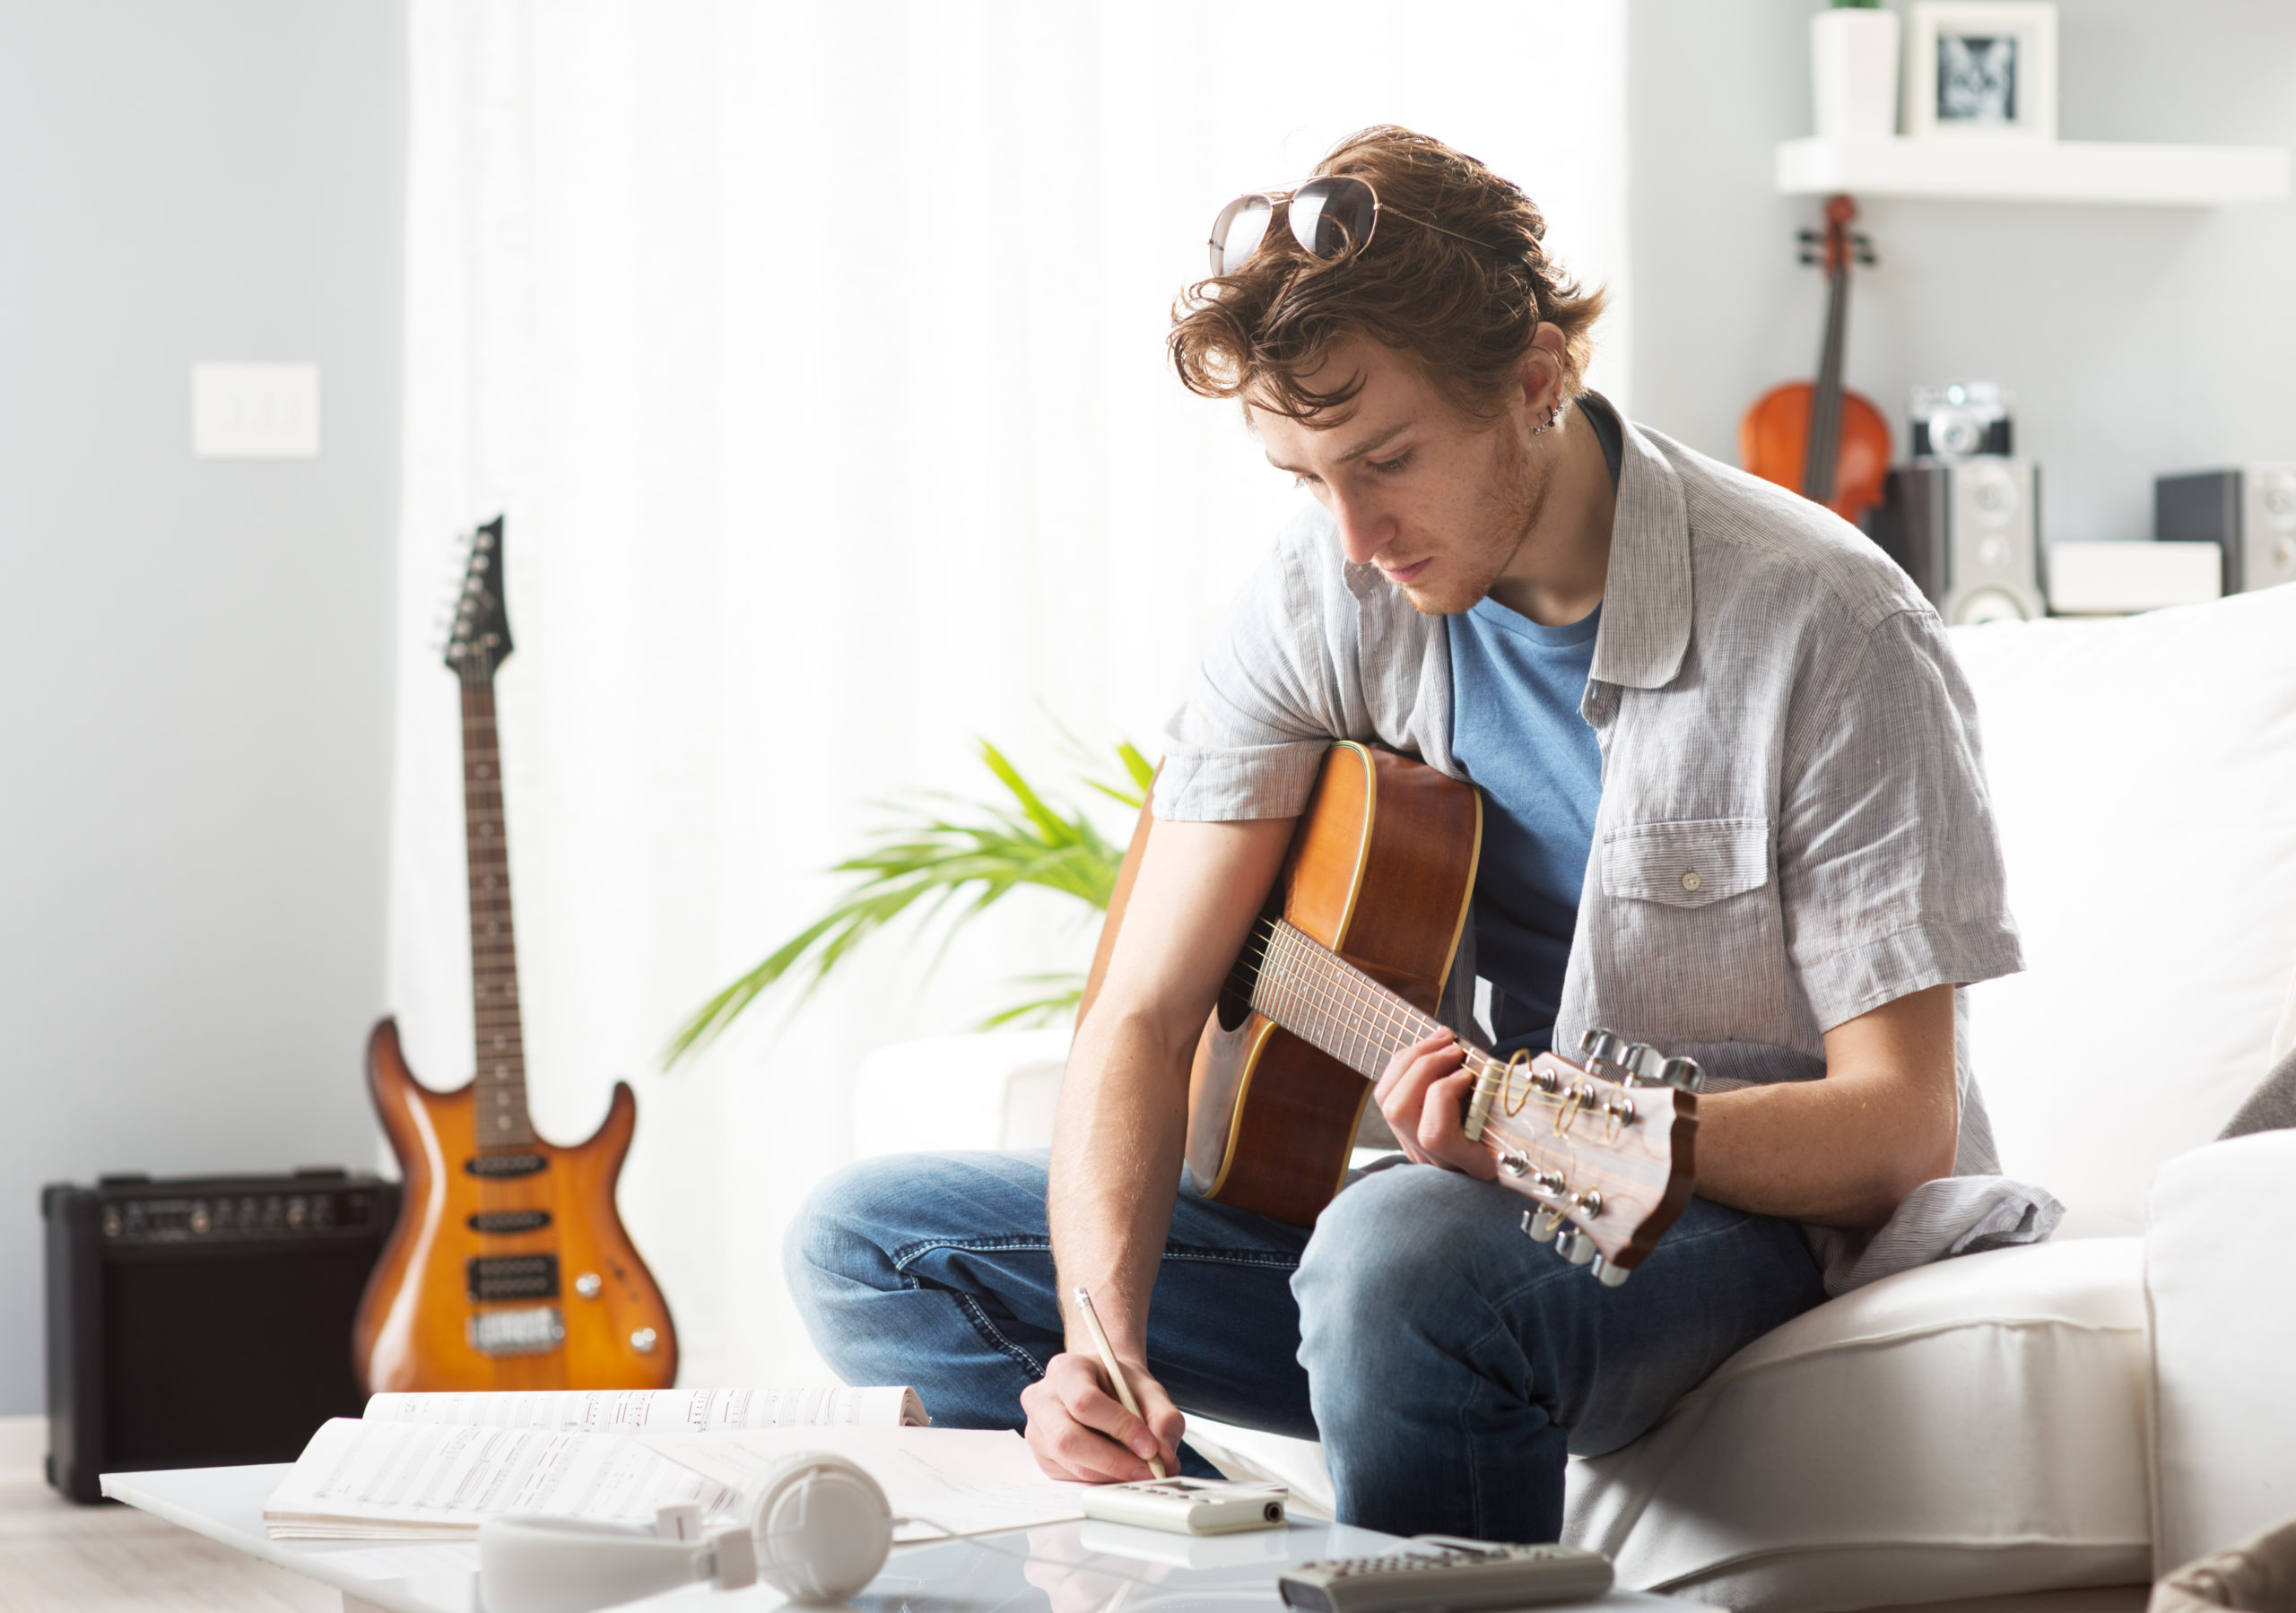 Нейронка пишет песни. Человек с гитарой. Человек с электрогитарой. Гитарист с ноутбуком. Человек сидит с гитарой.